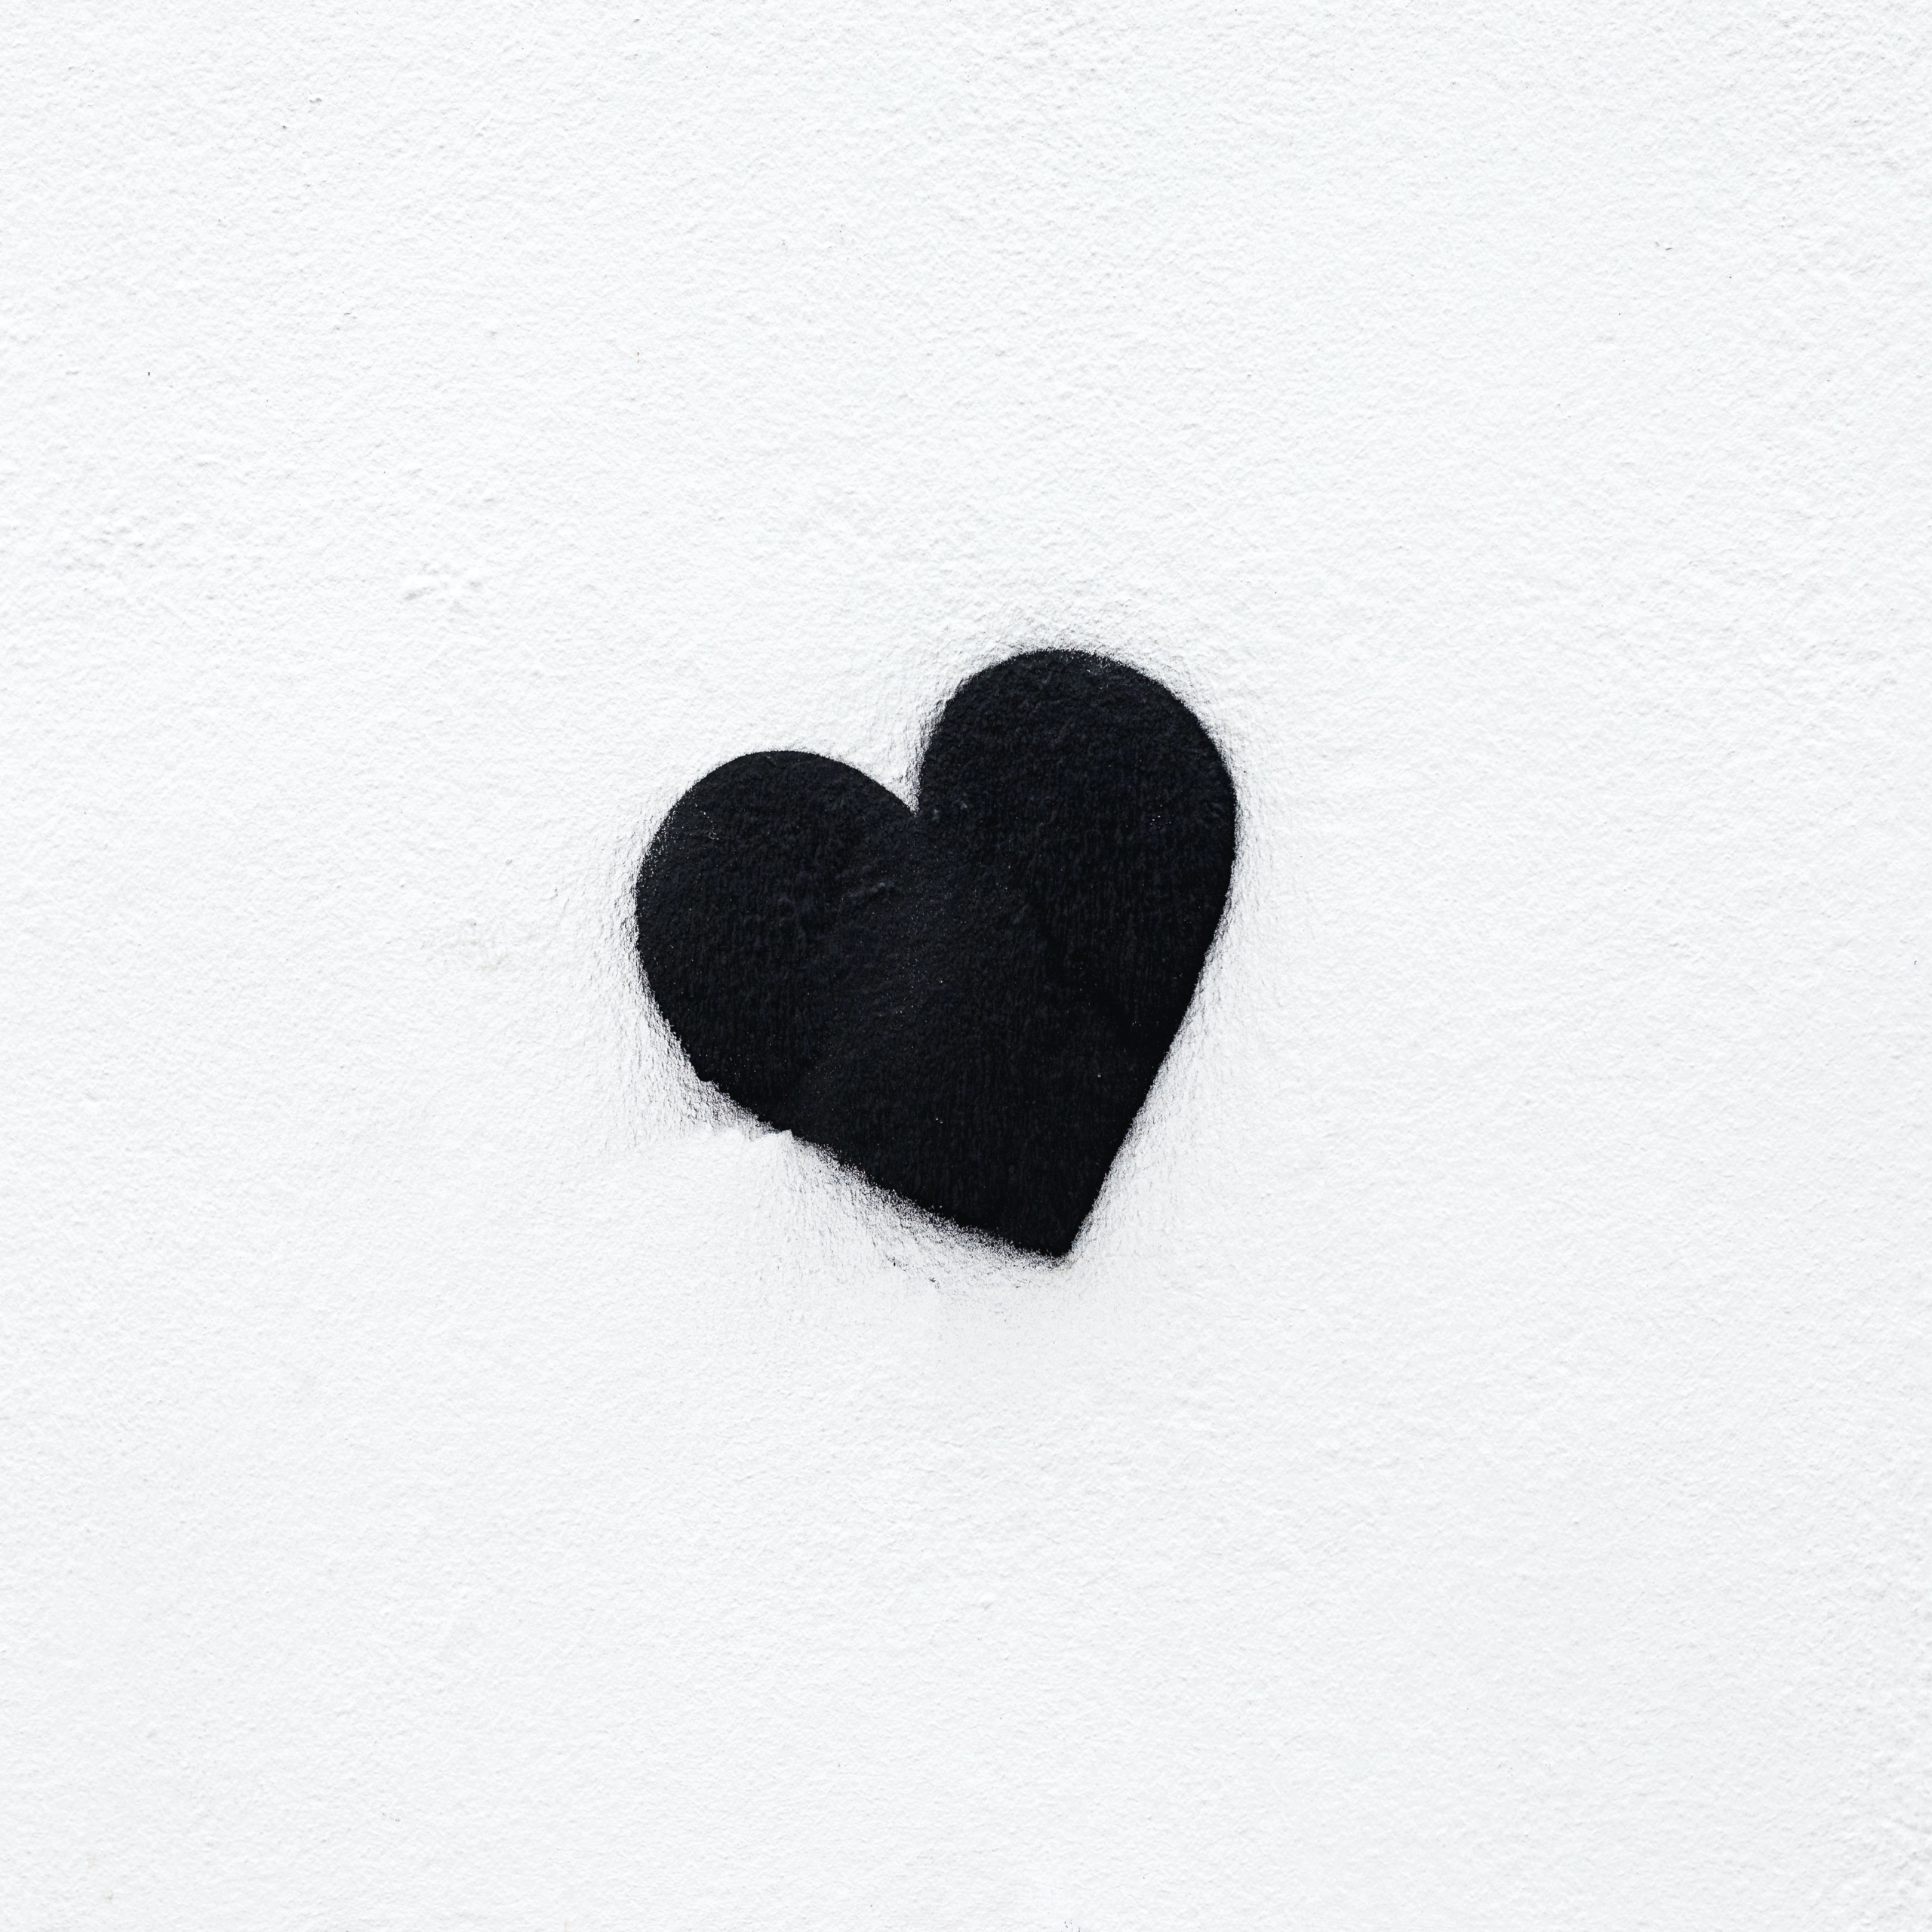 Black heart Wallpaper 4K, Love heart, White background